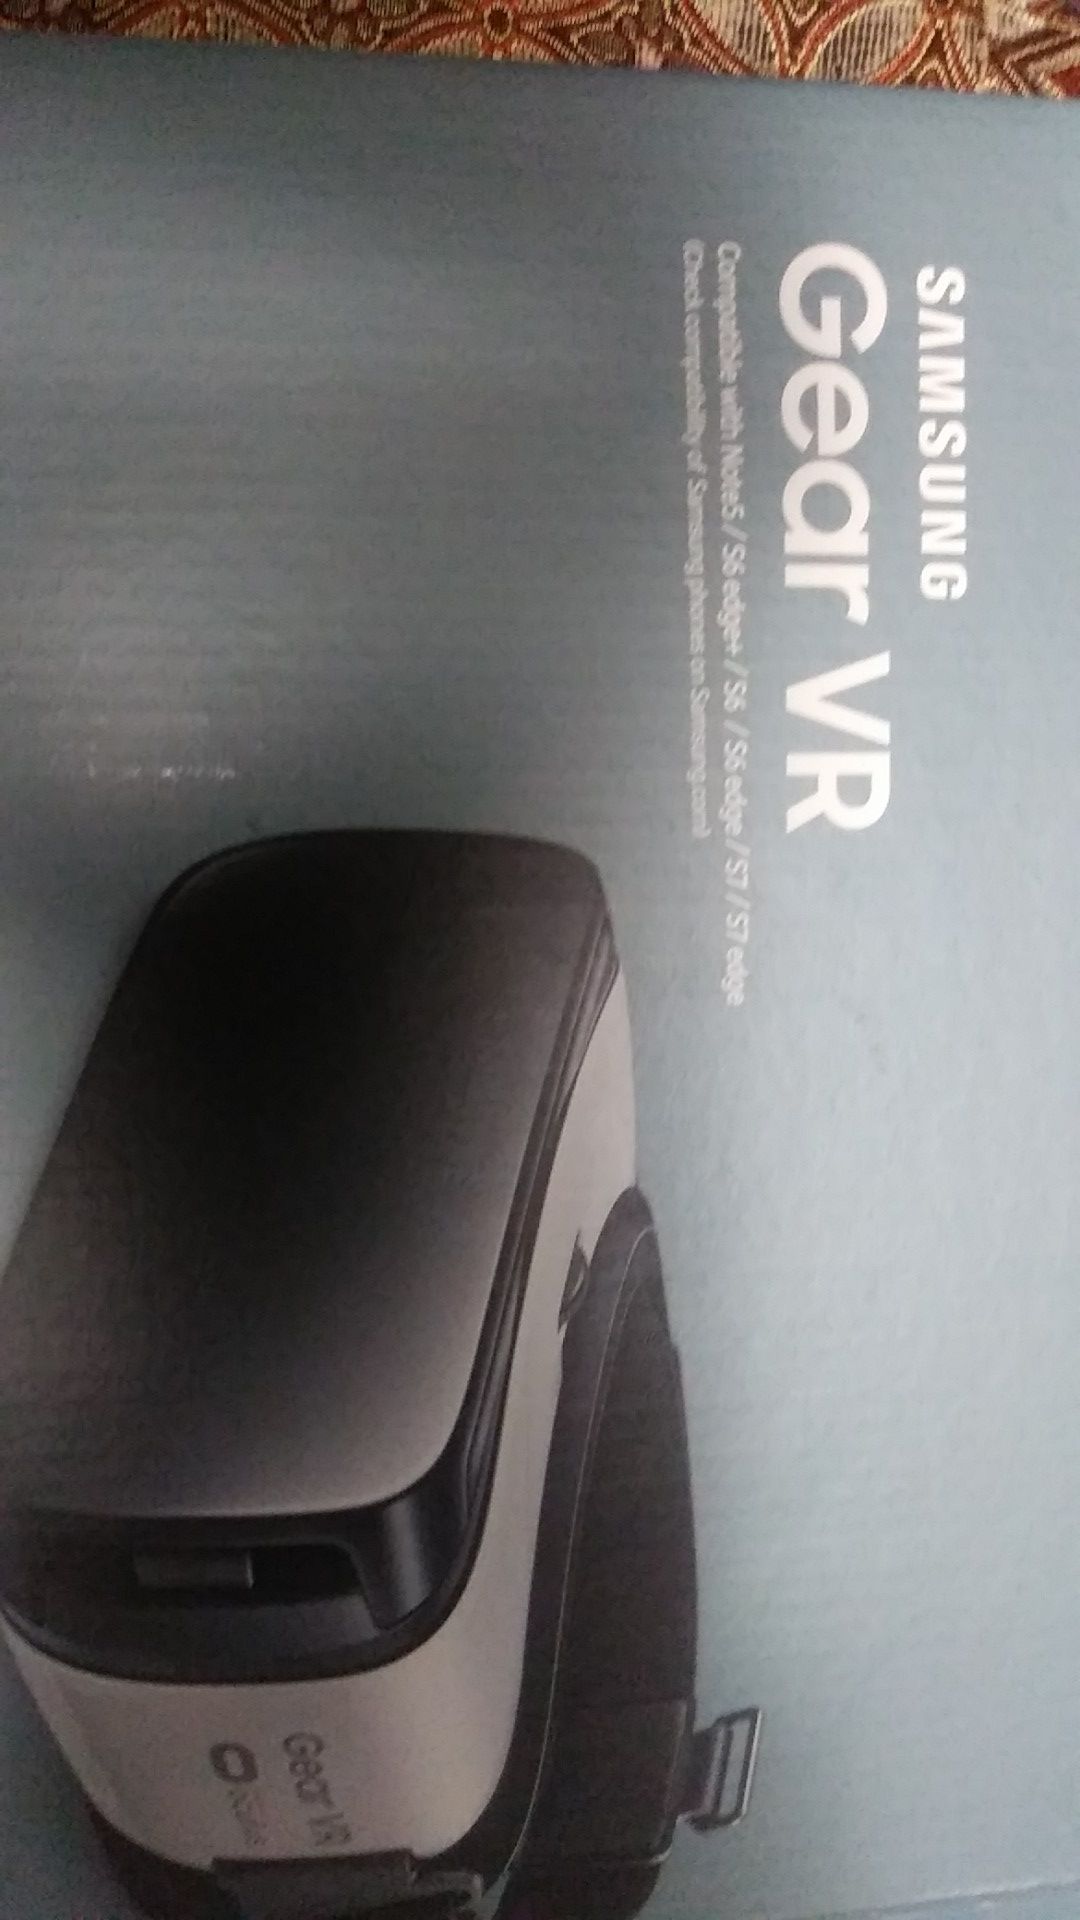 Samsung Gear VR brand new